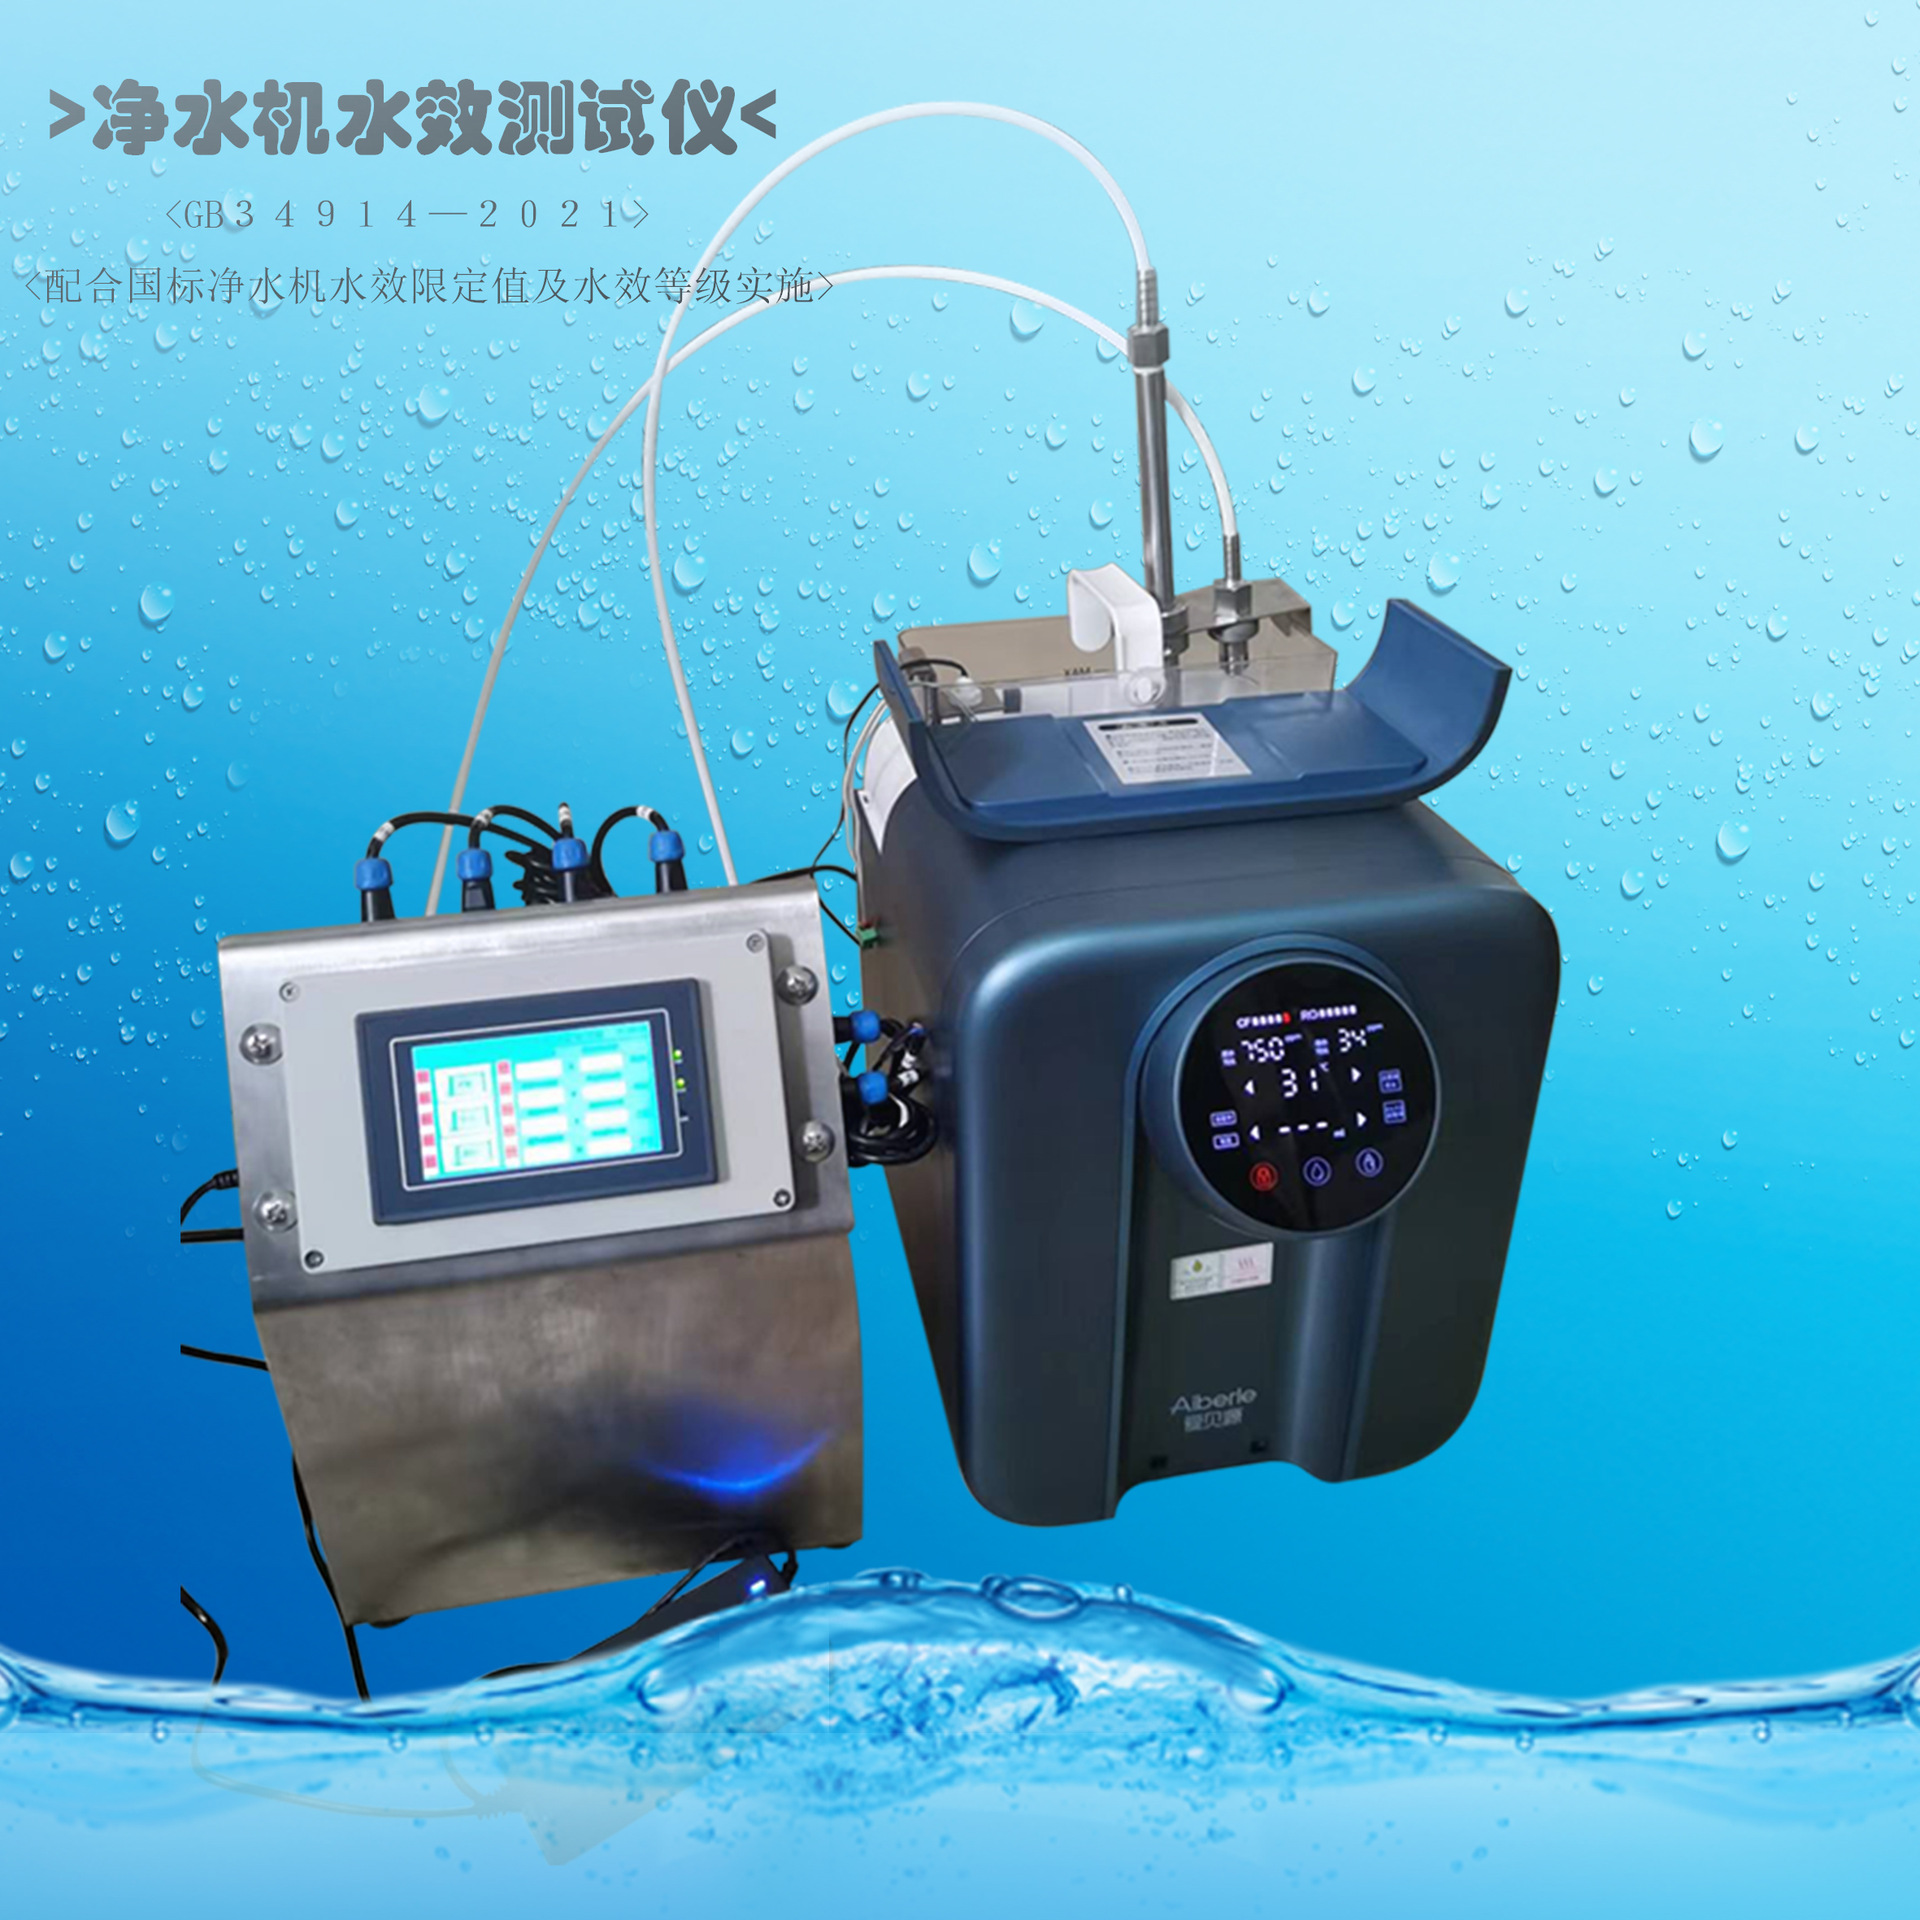 水效测试机 净水机水效测试仪 水效测试设备 小型净水机 广东水效测试机图片